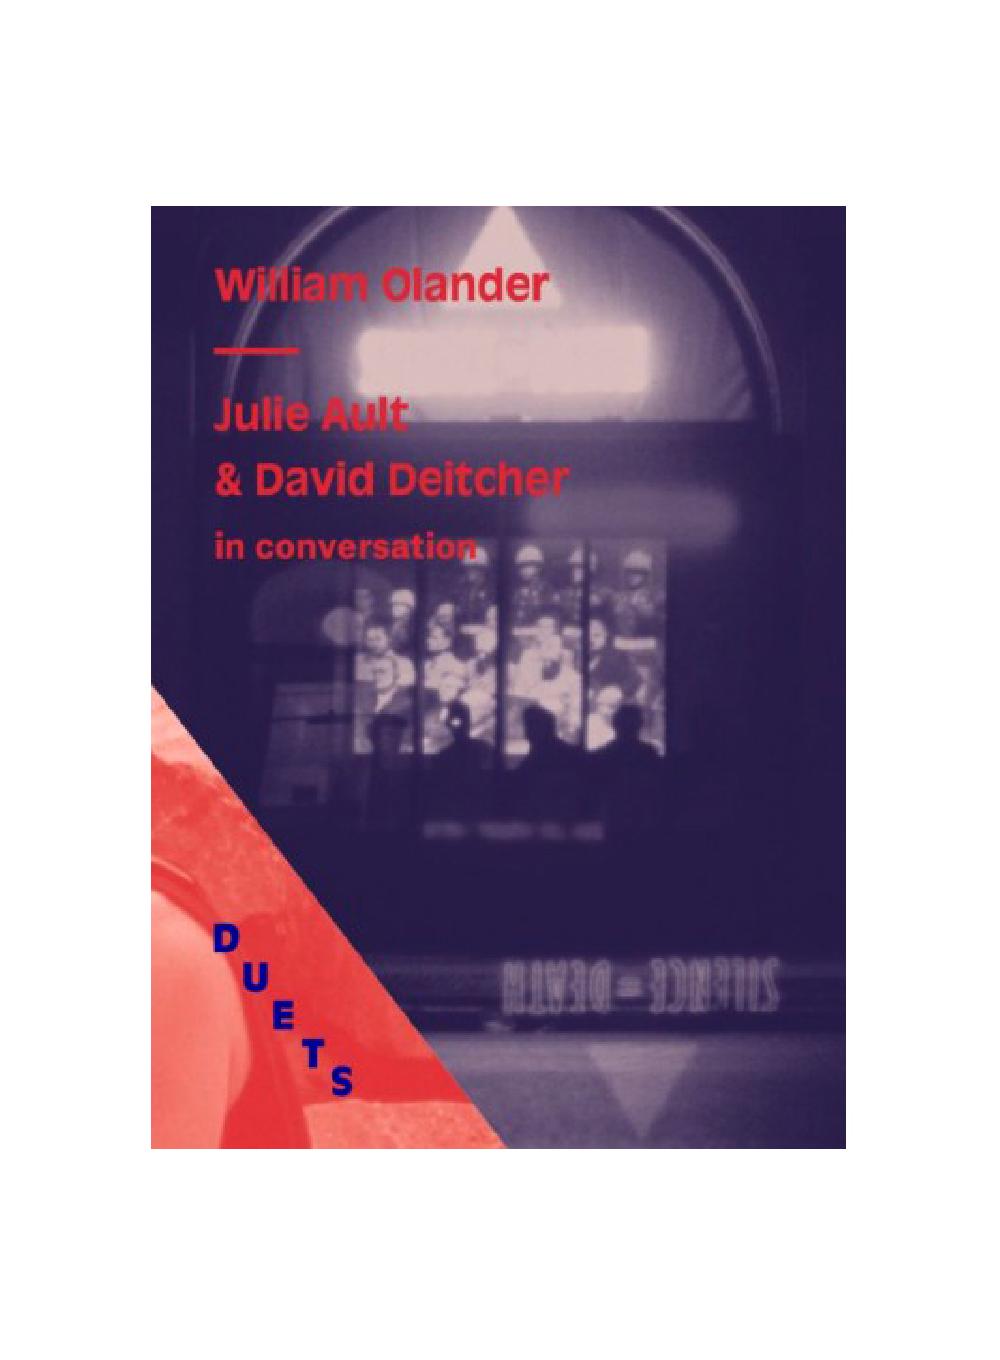 DUETS: Julie Ault & David Deitcher in Conversation on William Olander